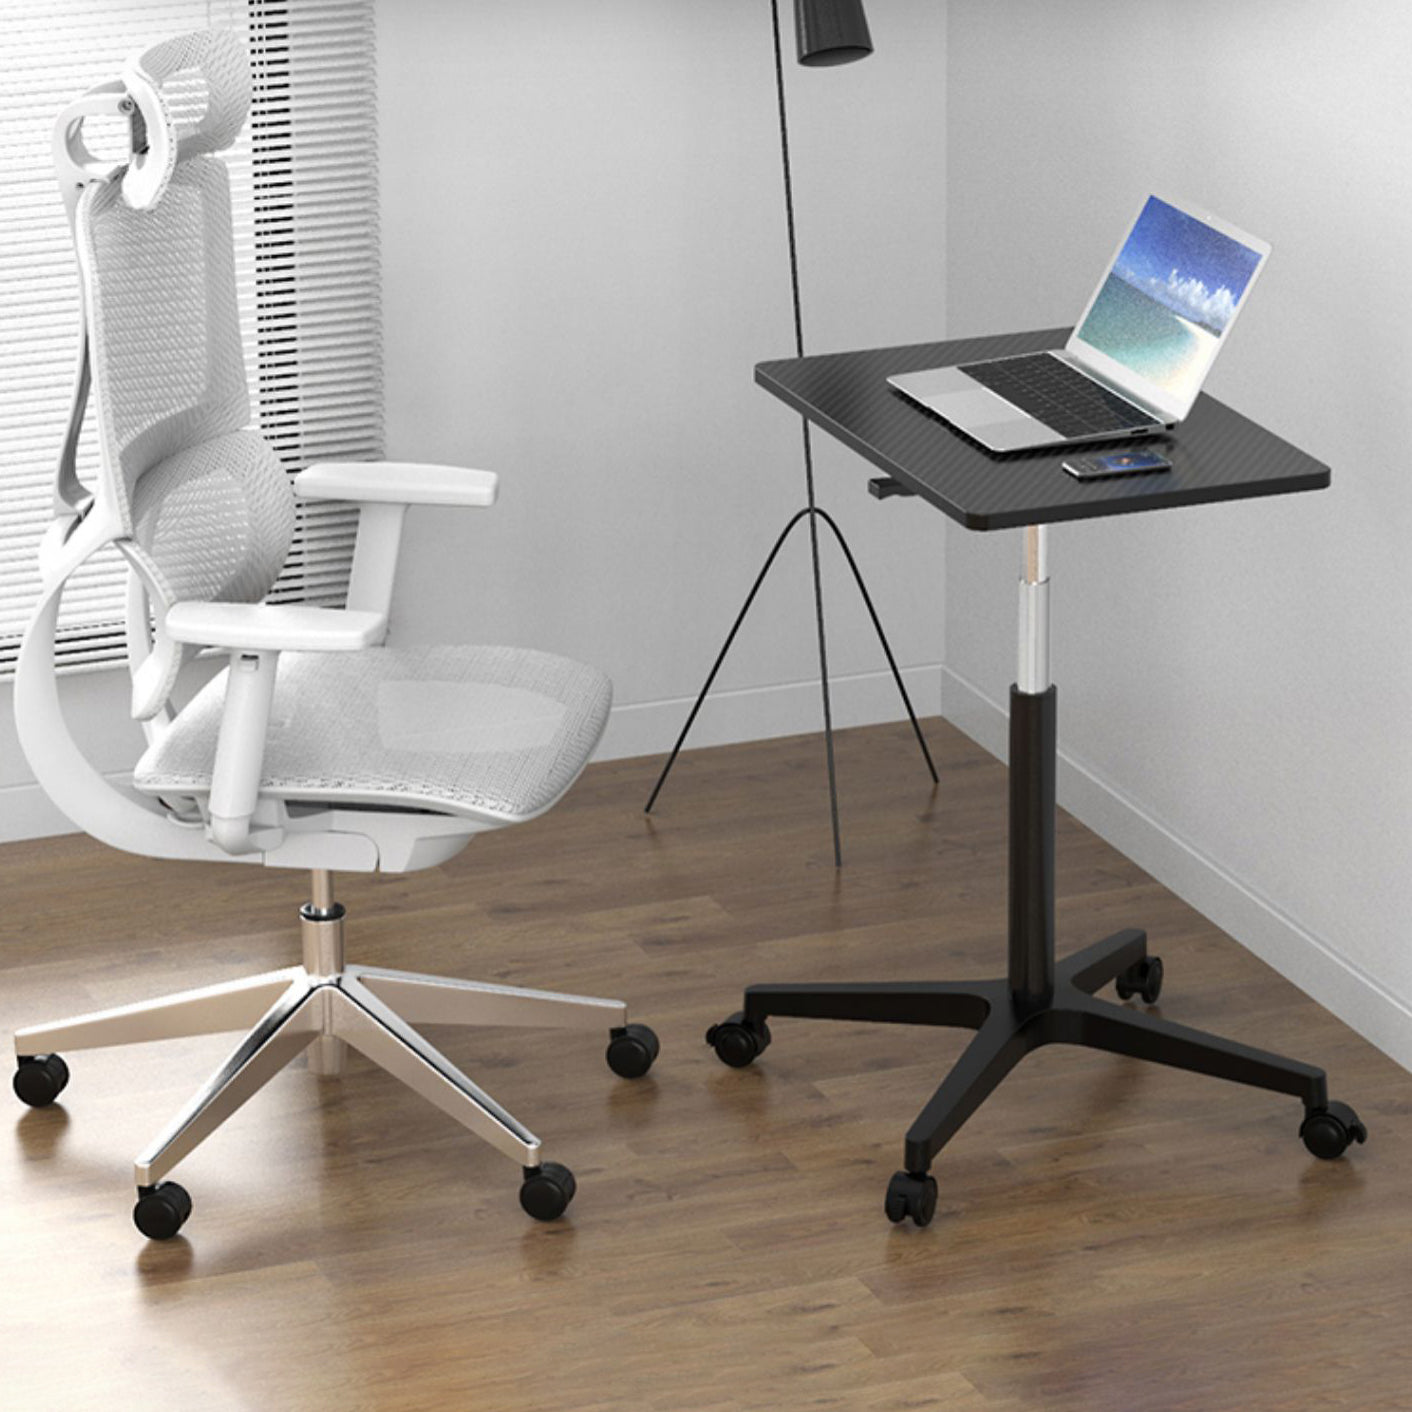 Rectangular Standing Desk Manufactured Wood Adjustable Desk with Caster Wheels